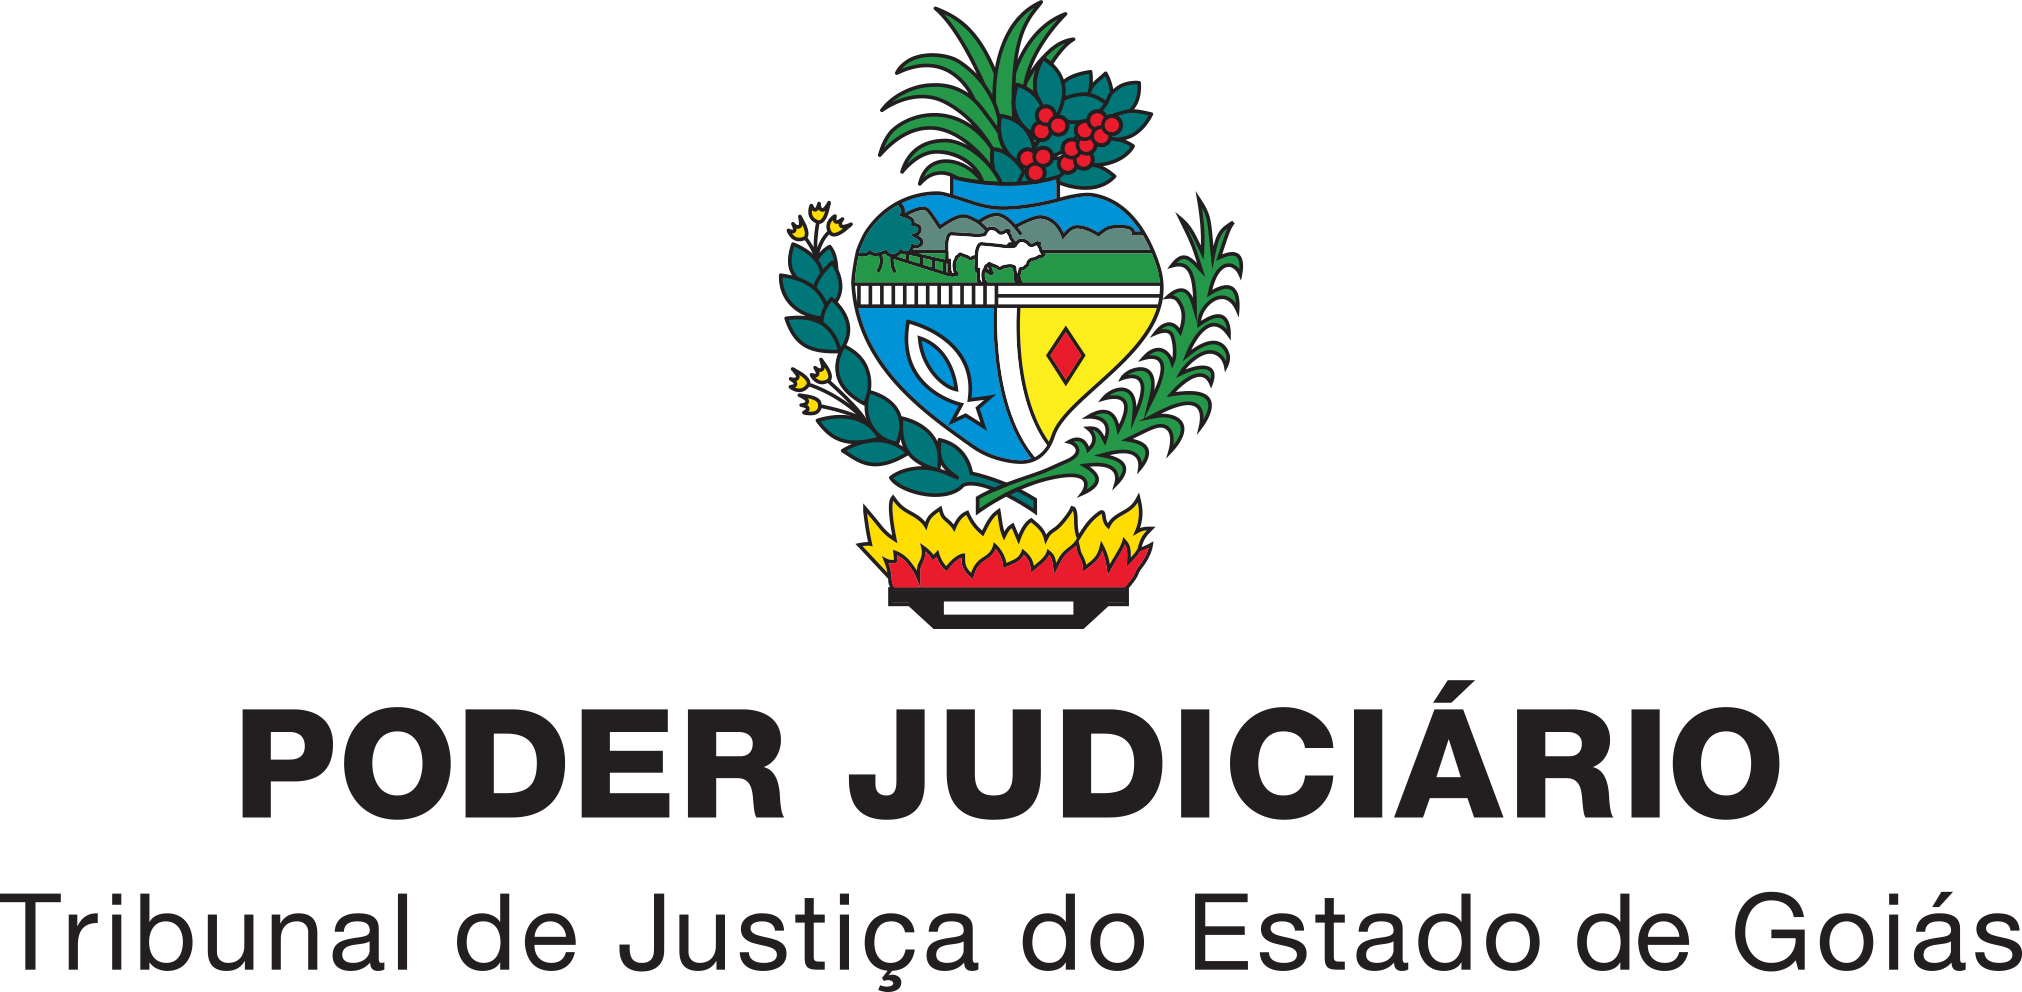 Poder Judiciário - Tribunal de Justiça do Estado de Goiás